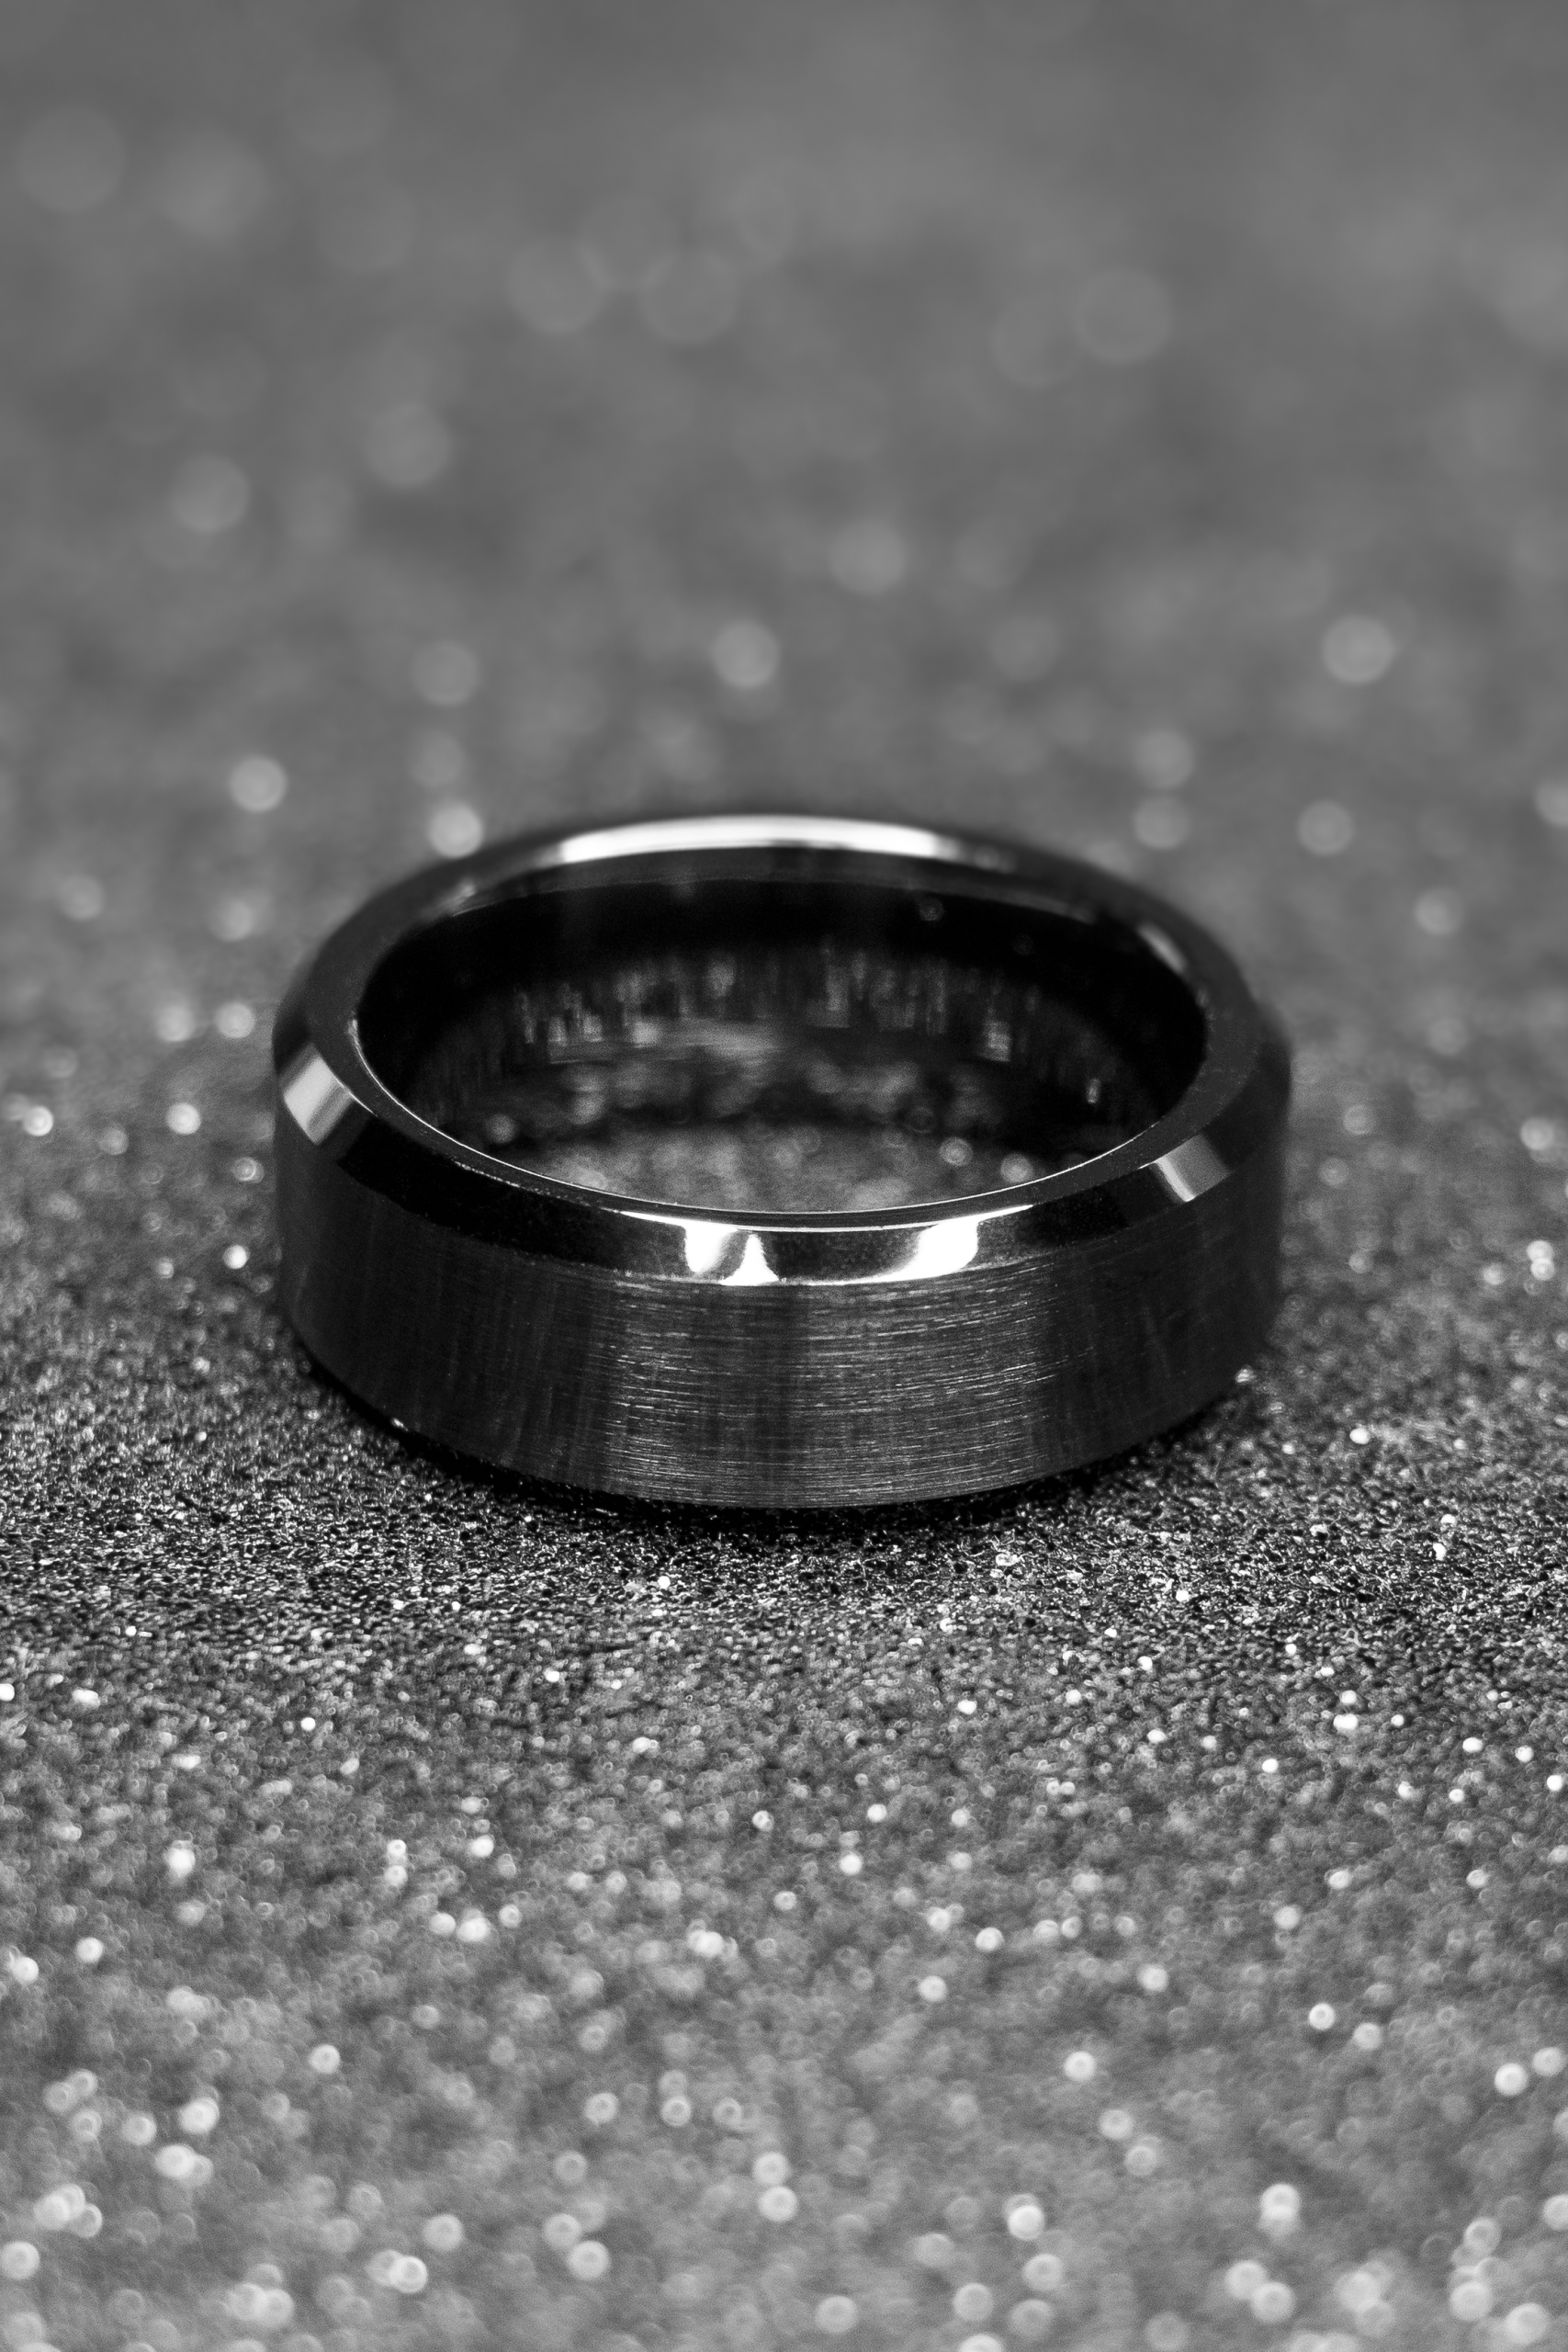 The Nero Black Ceramic Ring